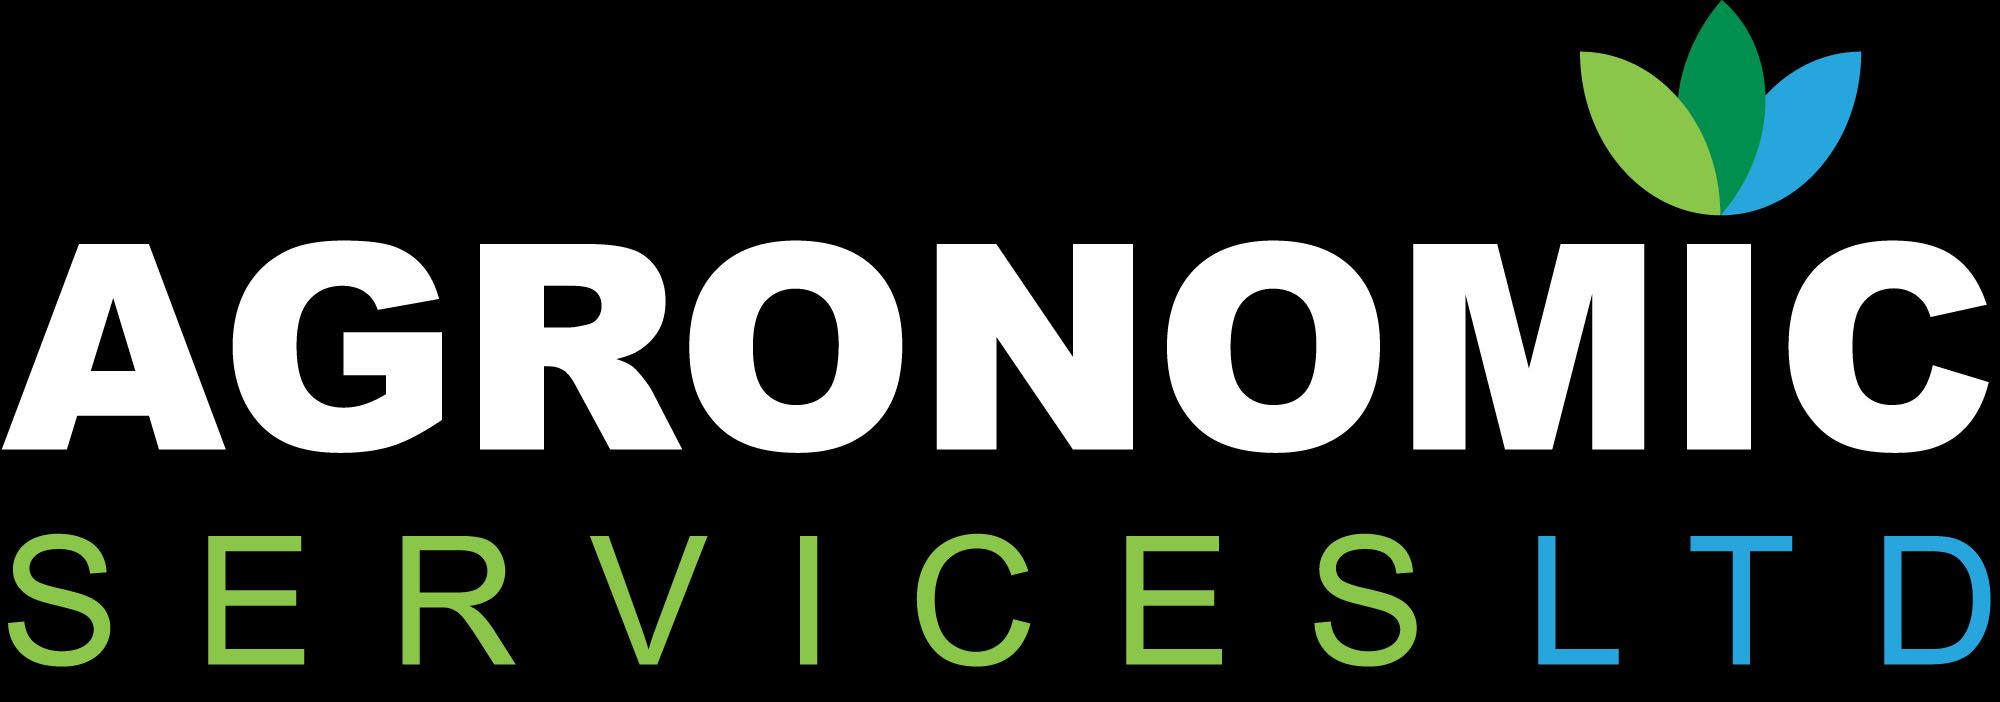 Agronomic Services Ltd